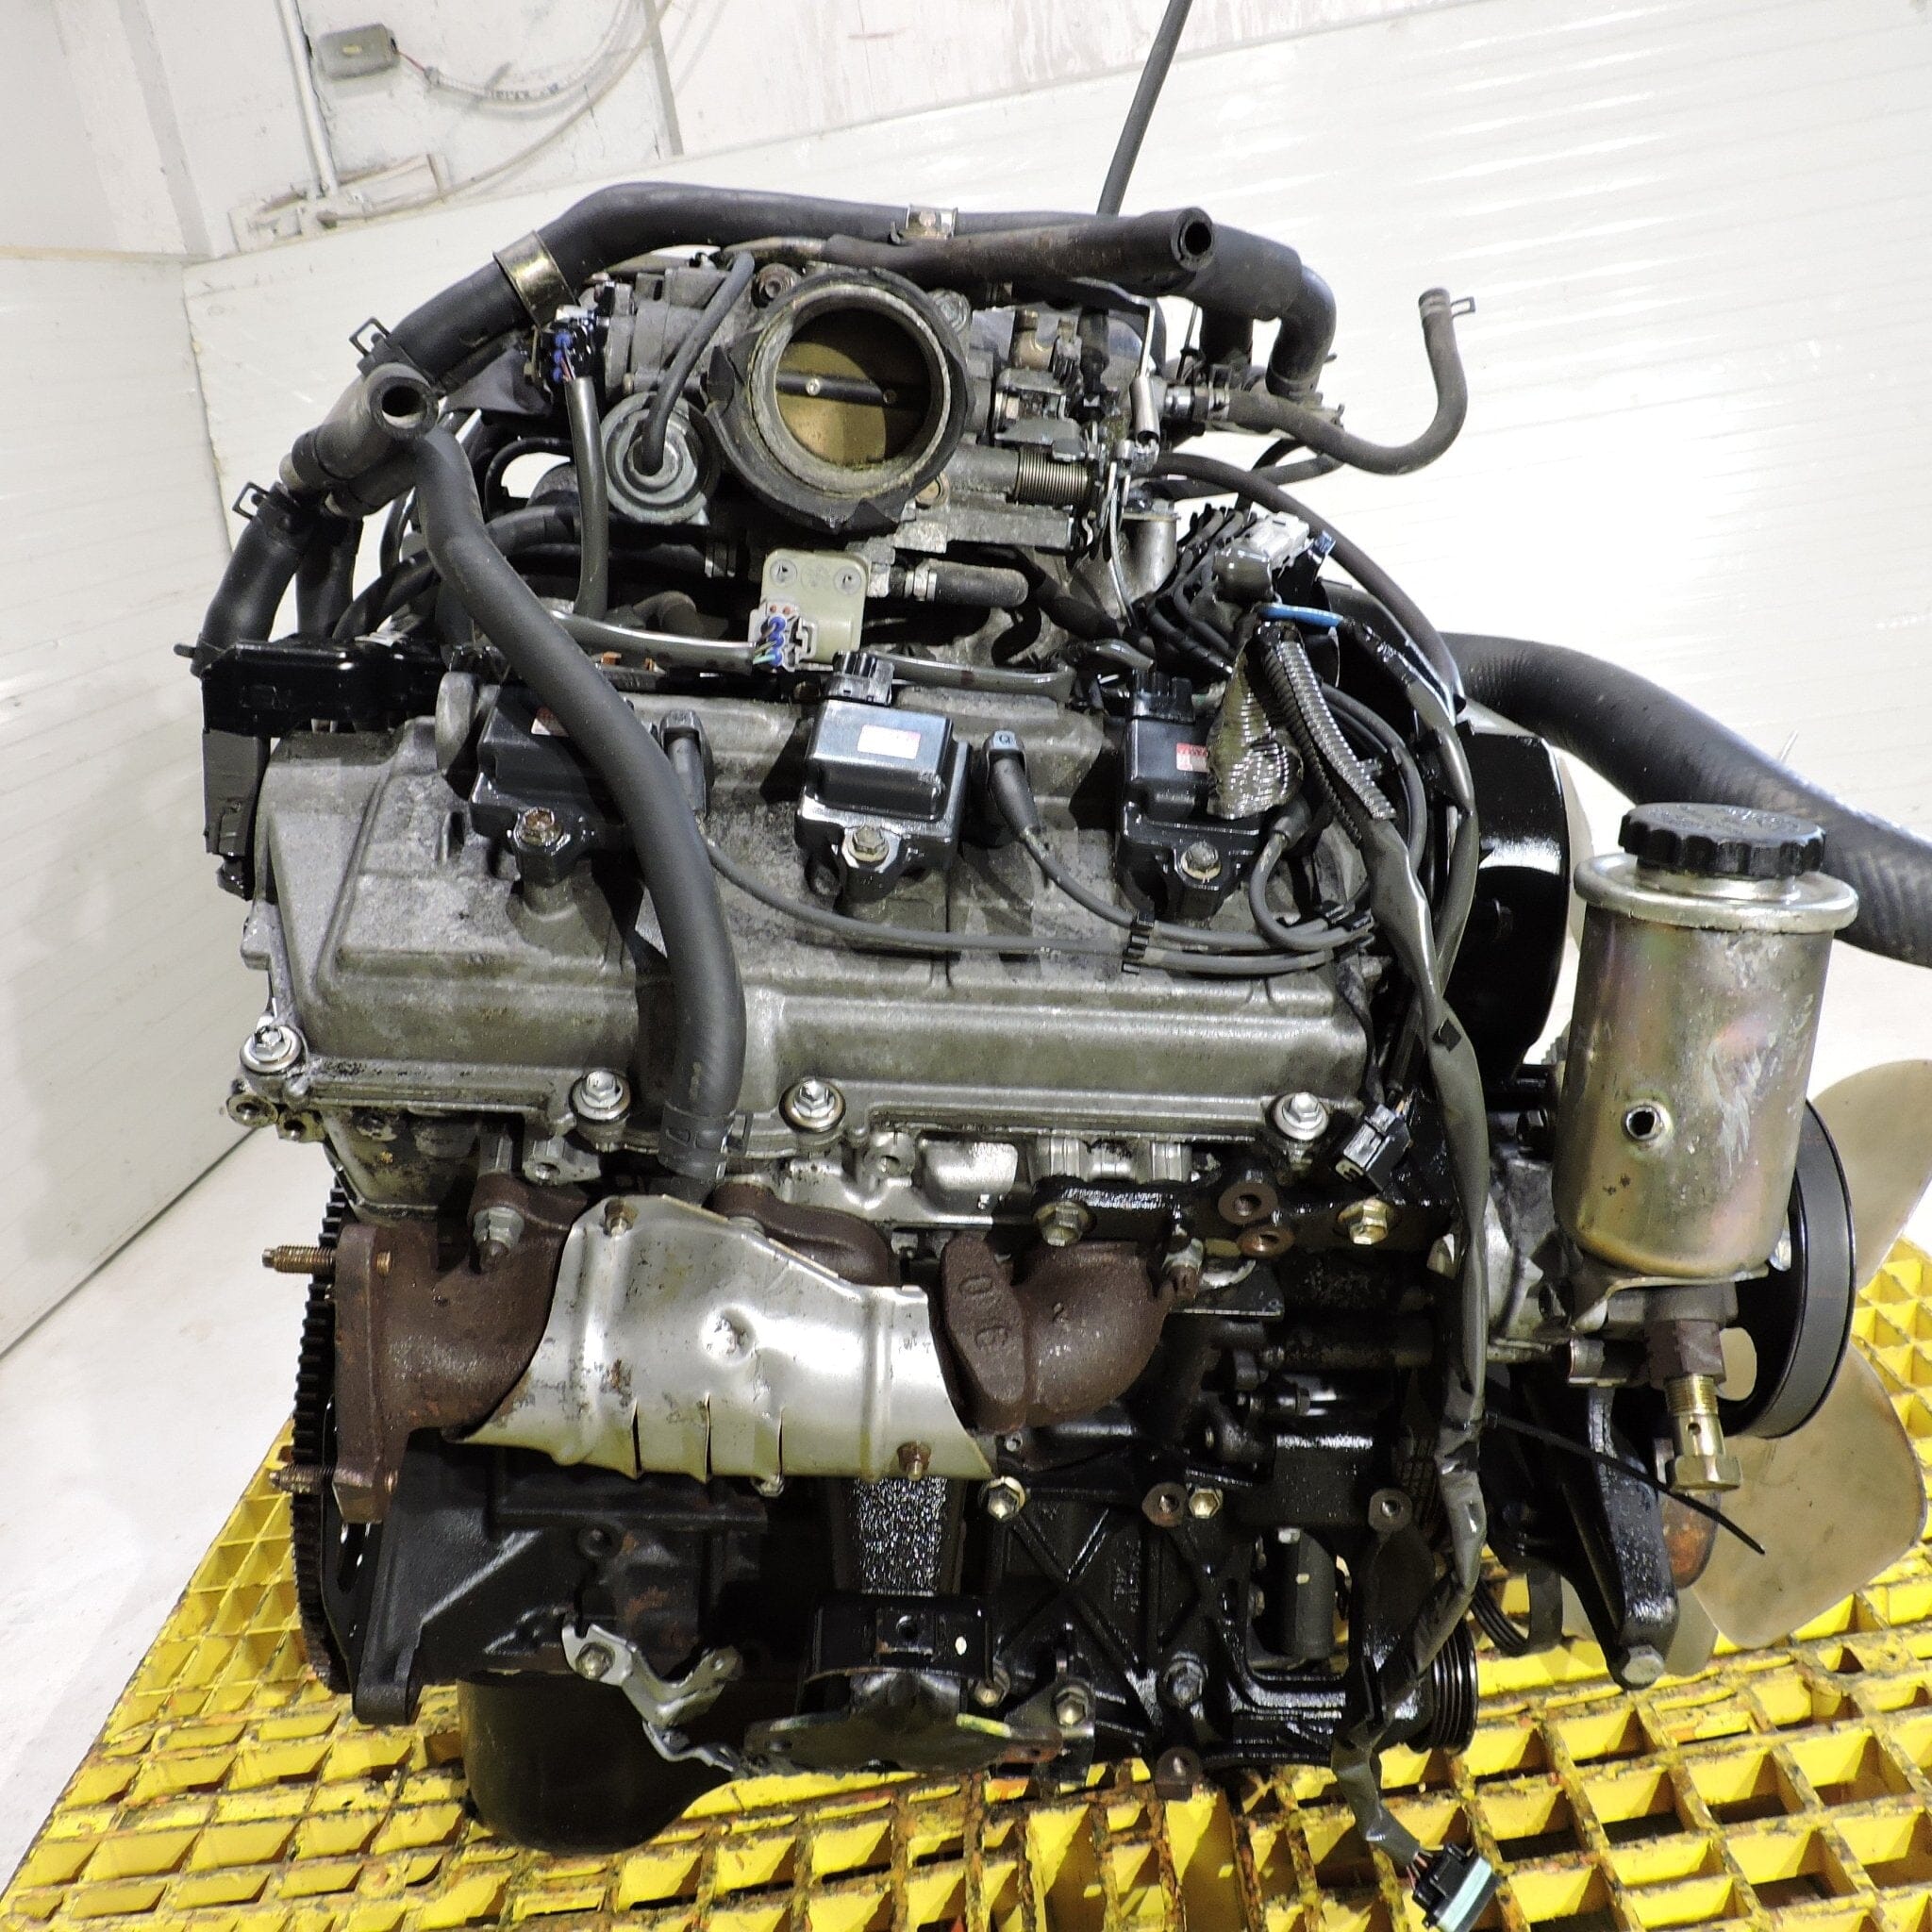 Toyota Tacoma 1996-2004 3.4L JDM Engine - 5vz Fe 6-Cylinder